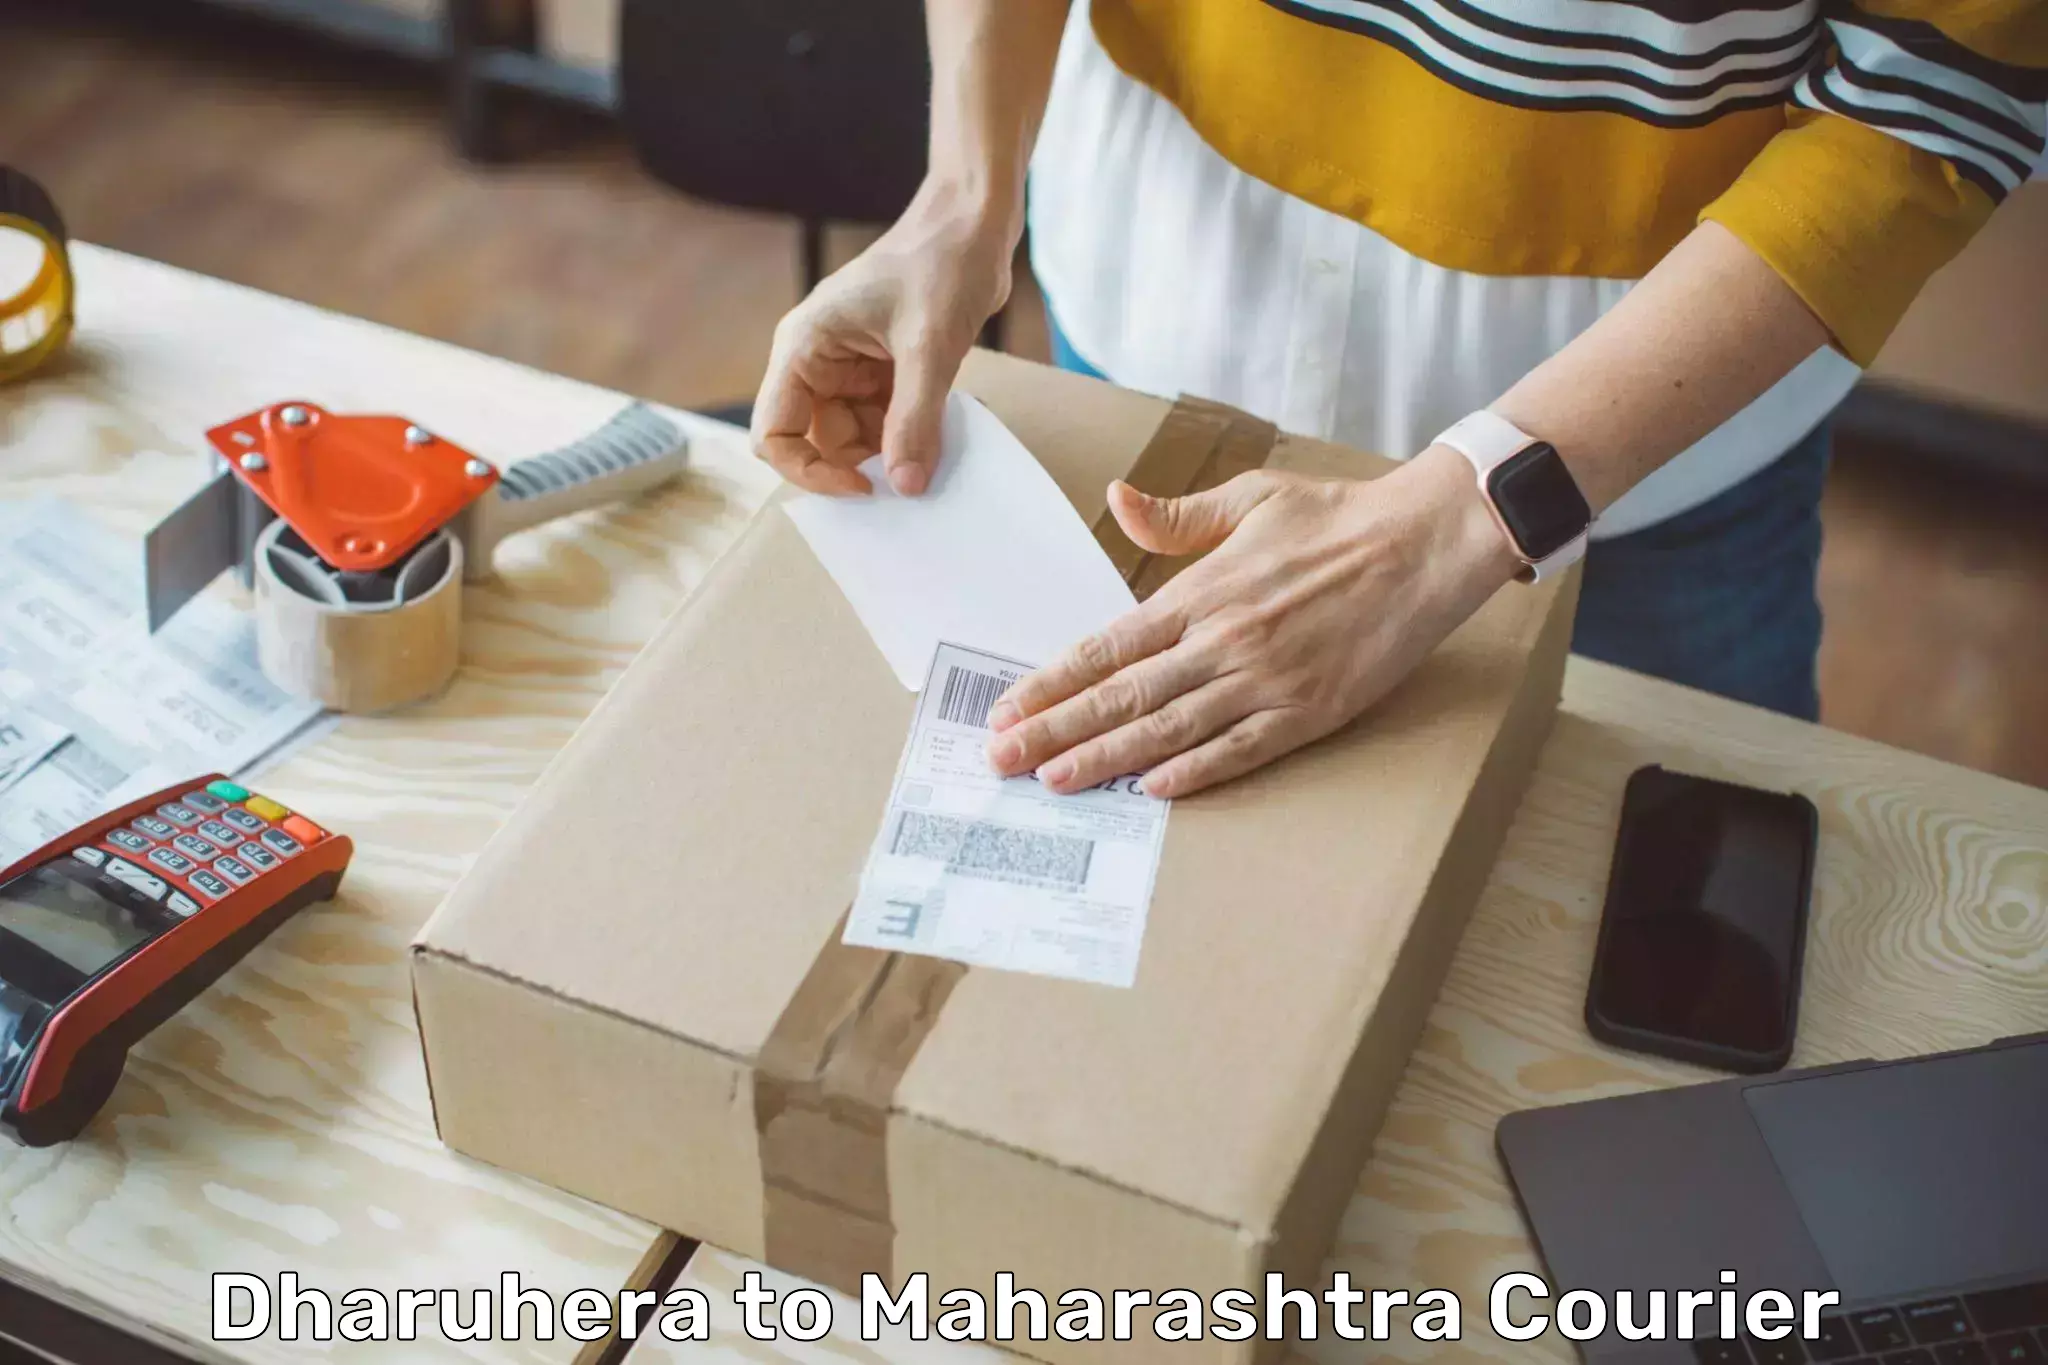 International parcel service Dharuhera to Mahabaleshwar